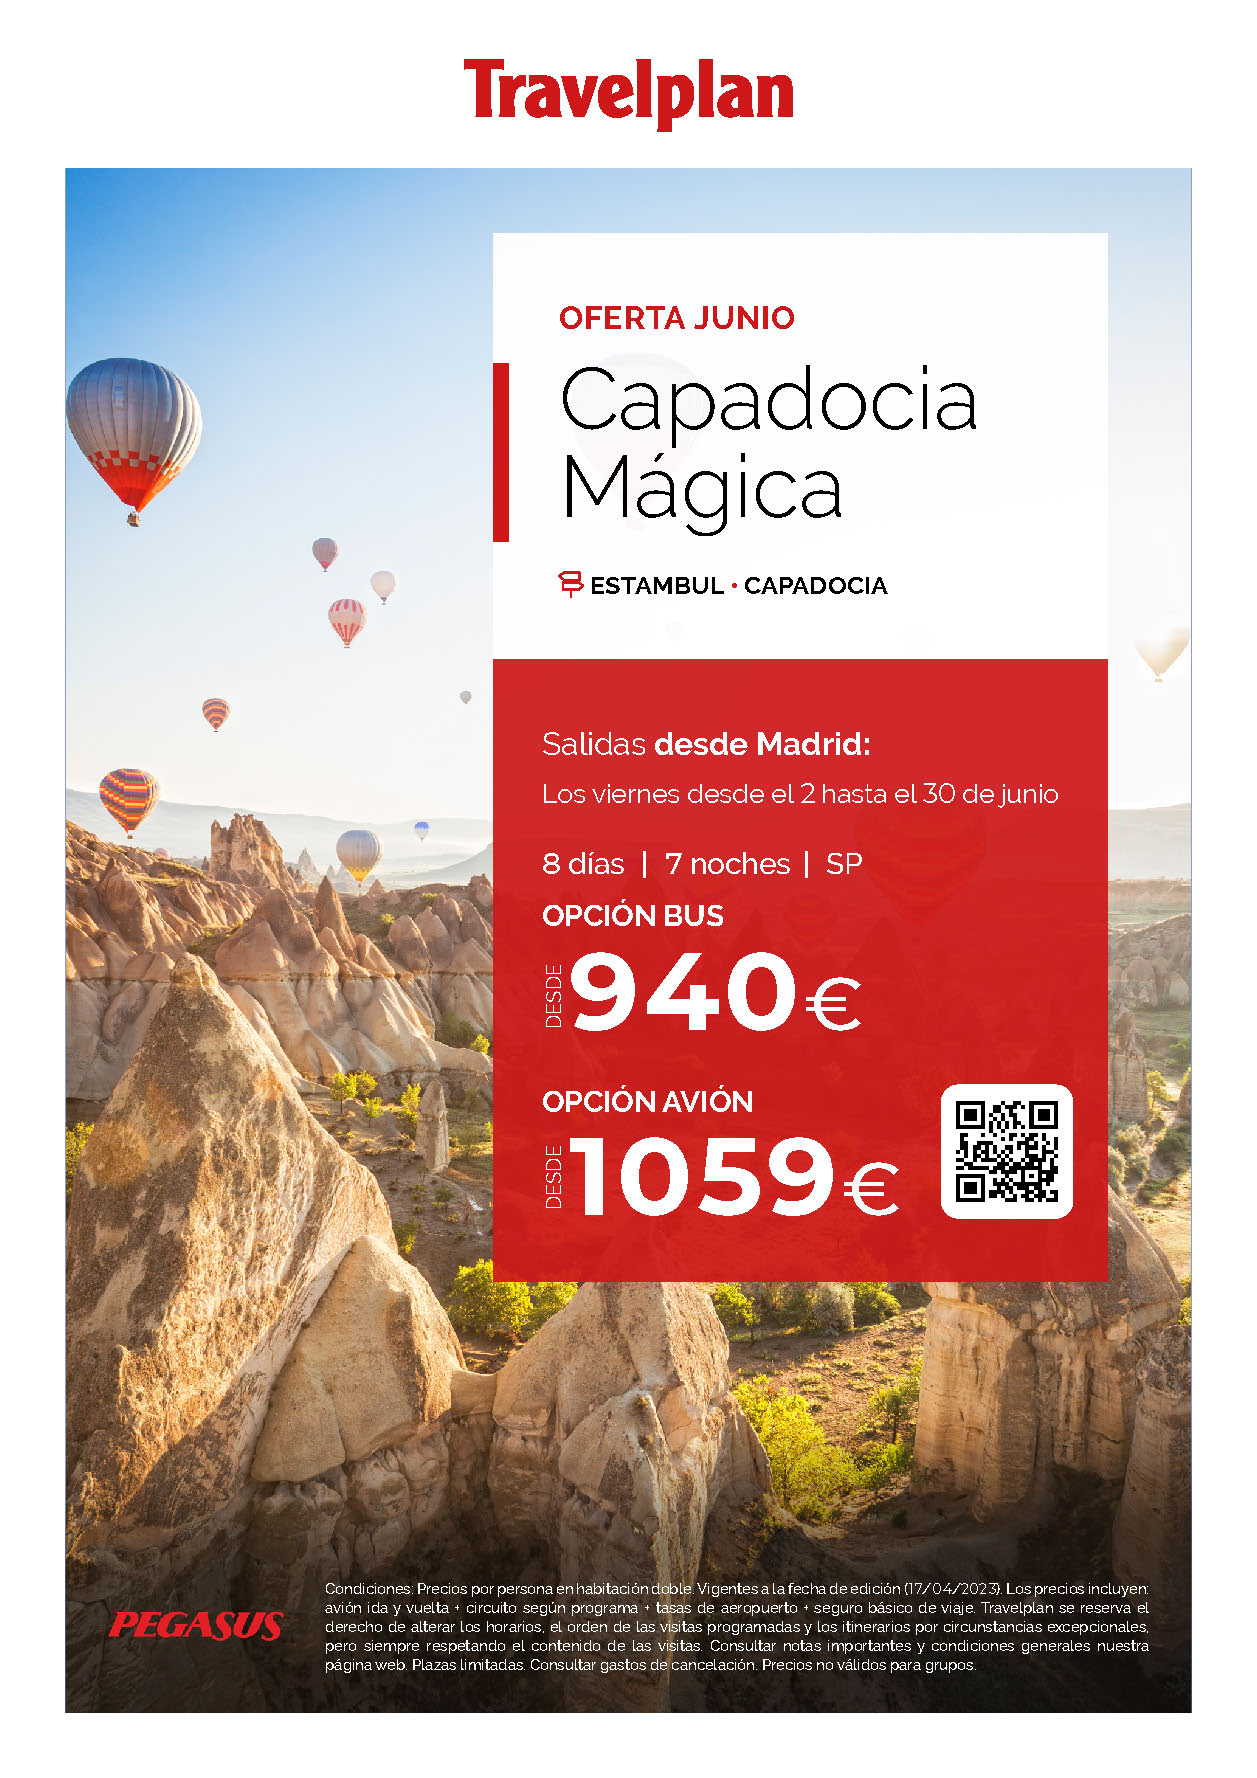 Oferta Travelplan Junio 2023 circuito Turquia Capadocia Magica 8 dias salida en vuelo directo desde Madrid